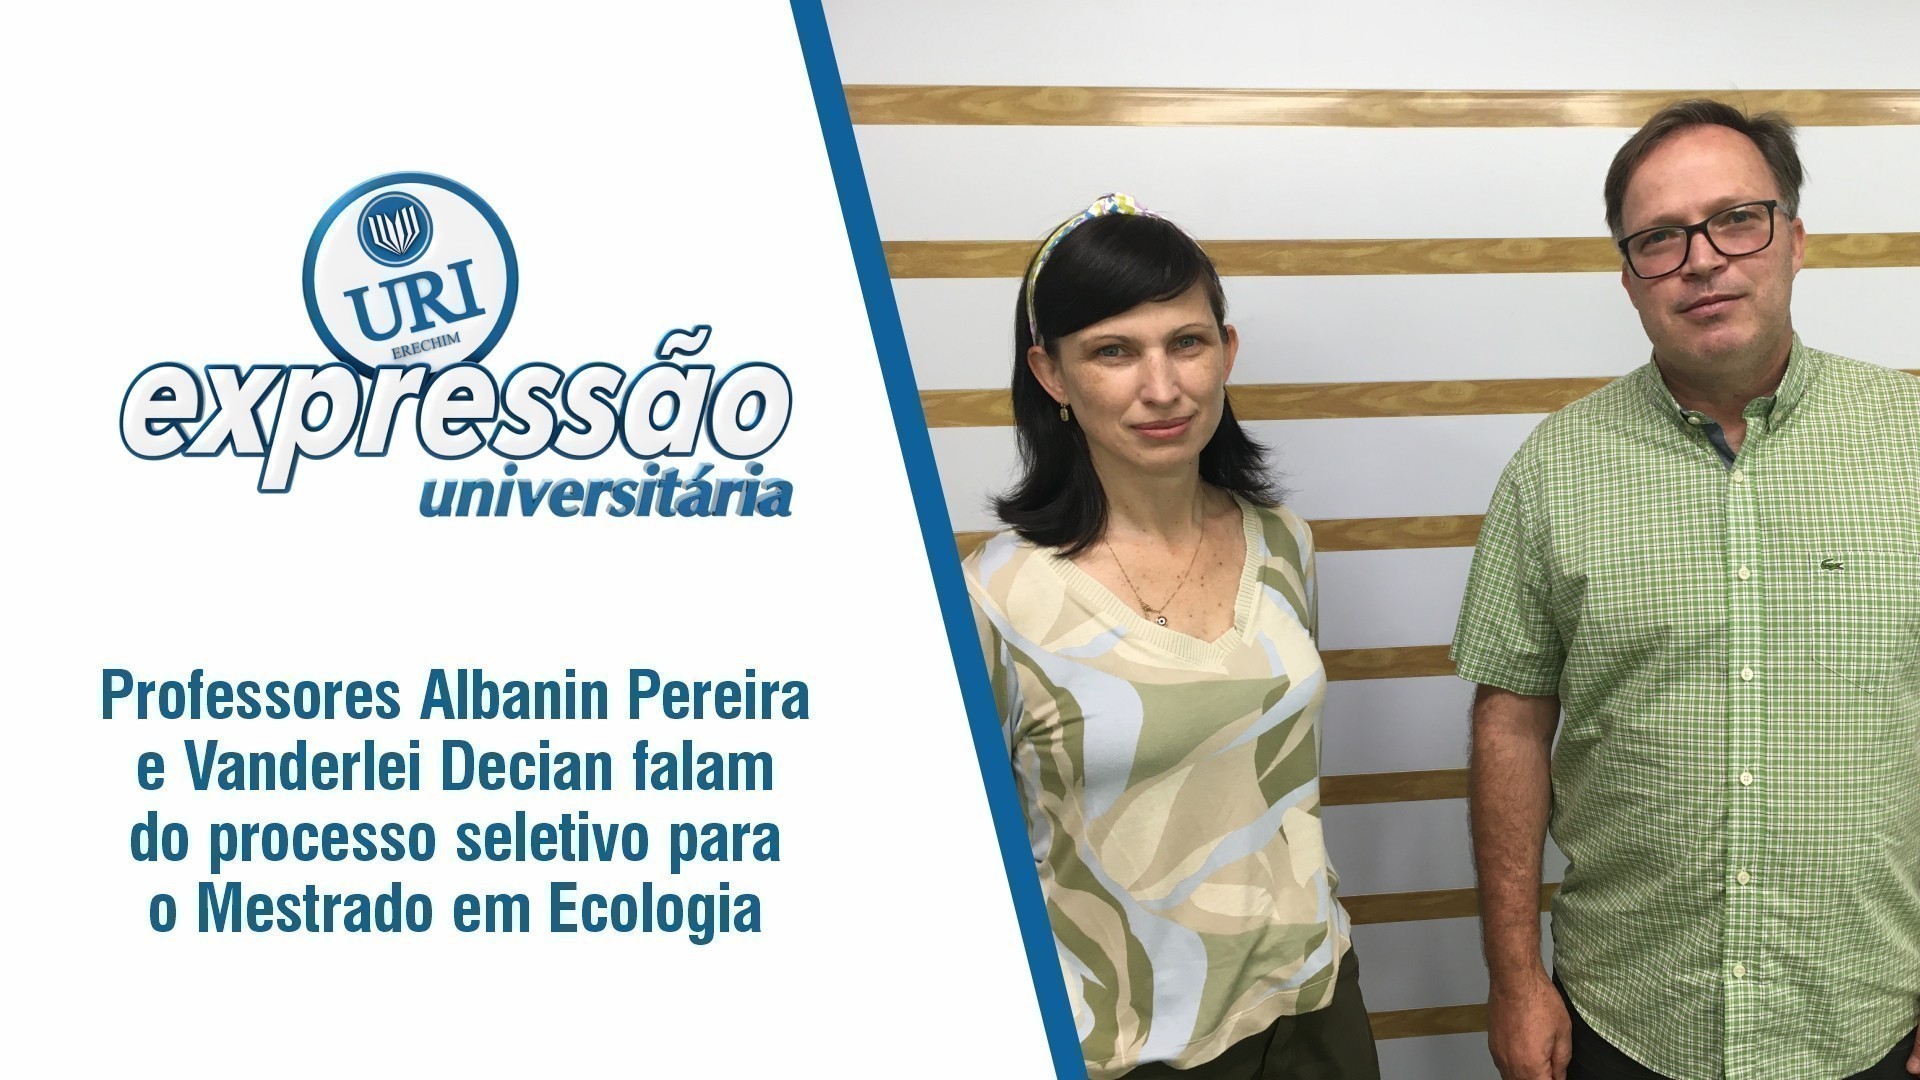 Professores Albanin Pereira e Vanderlei Decian falam do processo seletivo para o Mestrado em Ecologia  